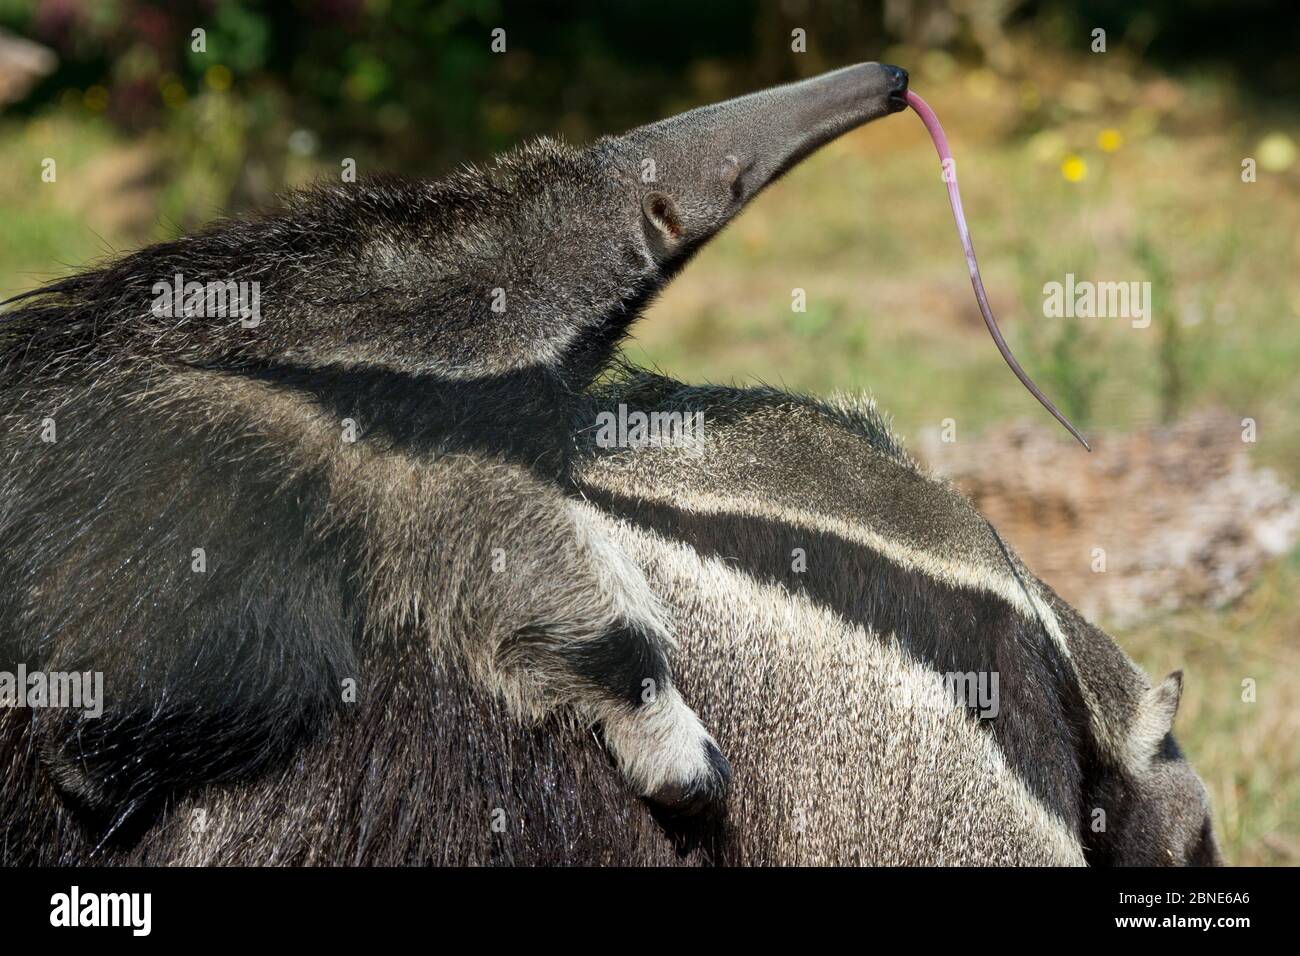 L'anteater gigante (Myrmecophaga tridactyla) bambino che si stacca fuori la lingua, sulla schiena della madre, prigioniero, si verifica in America centrale e del Sud. Specie vulnerabile. Foto Stock